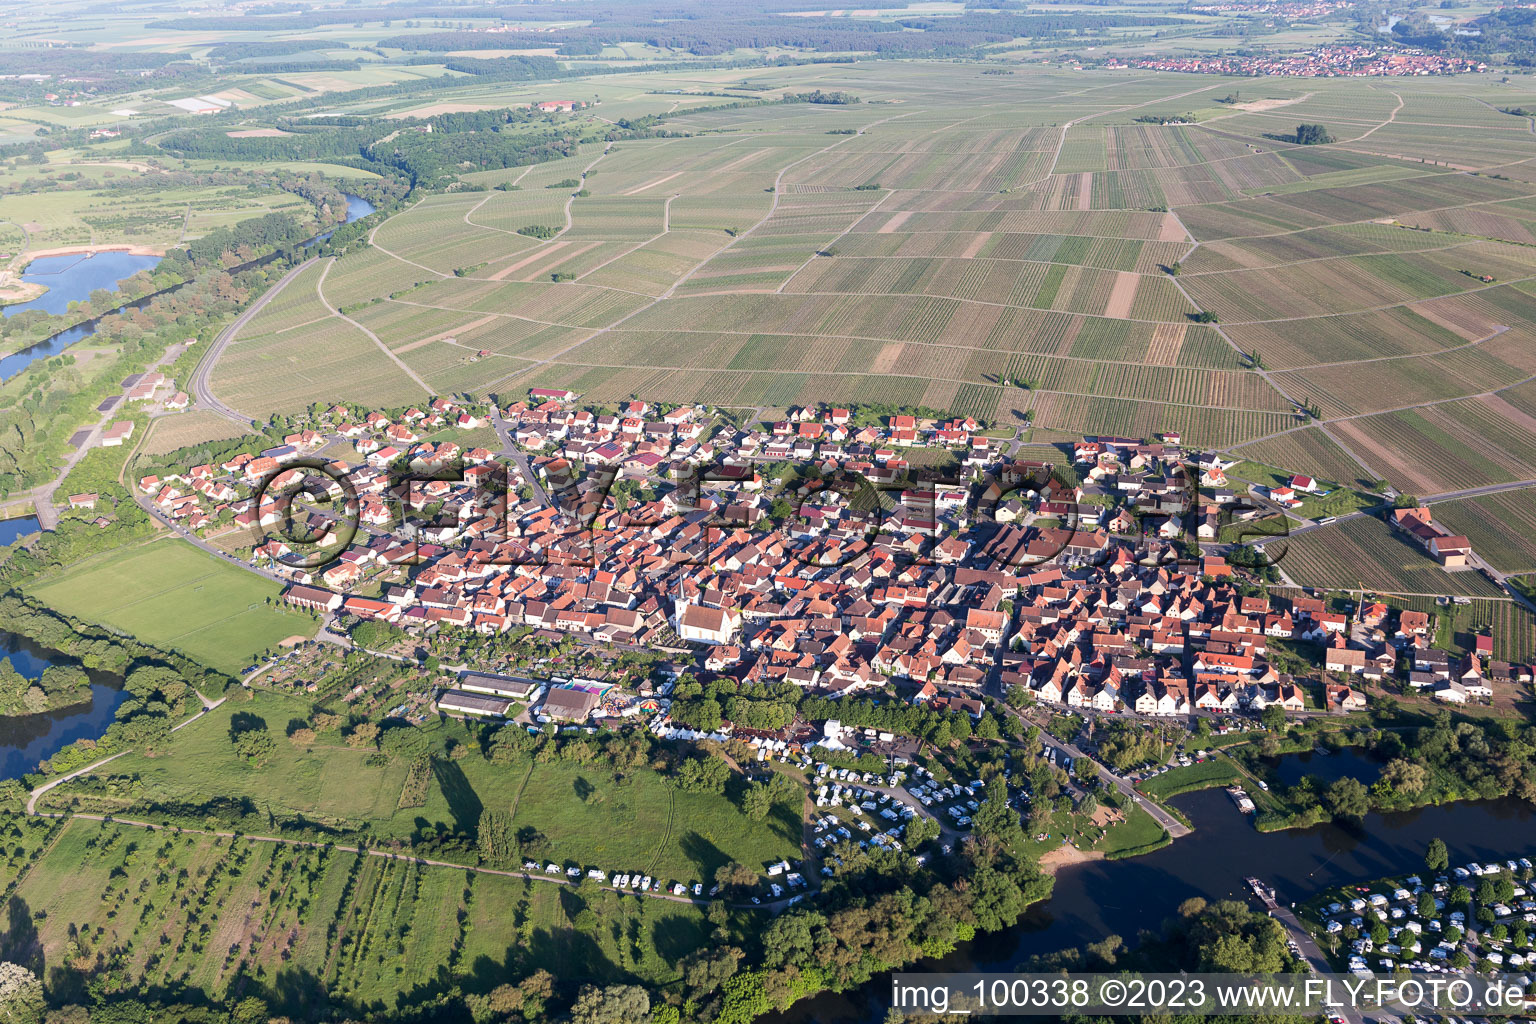 Nordheim am Main im Bundesland Bayern, Deutschland von der Drohne aus gesehen